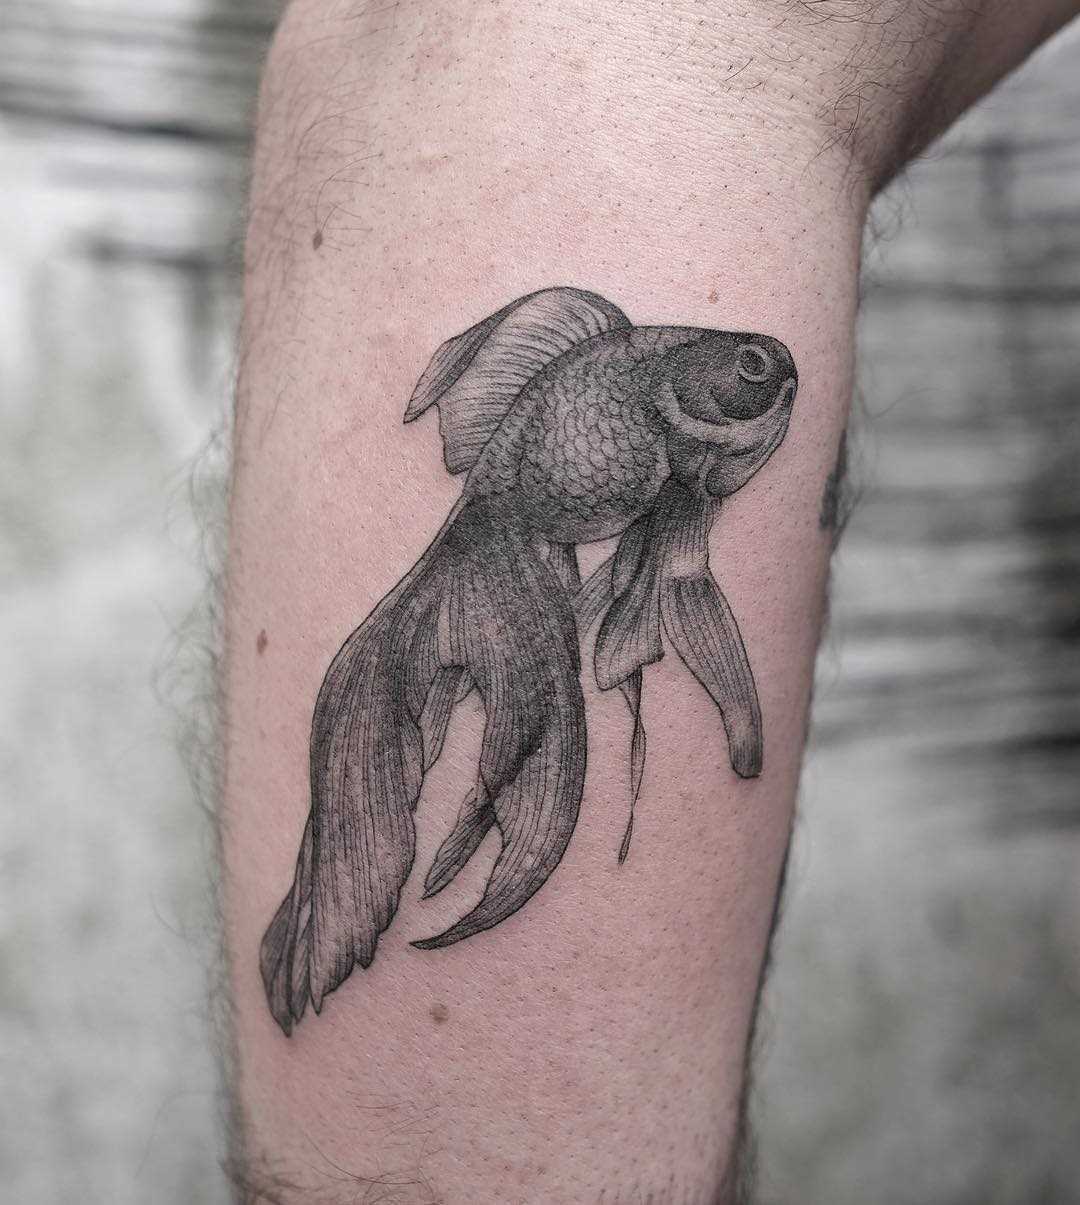 Tatuagem de peixe de ouro sobre a perna de um cara